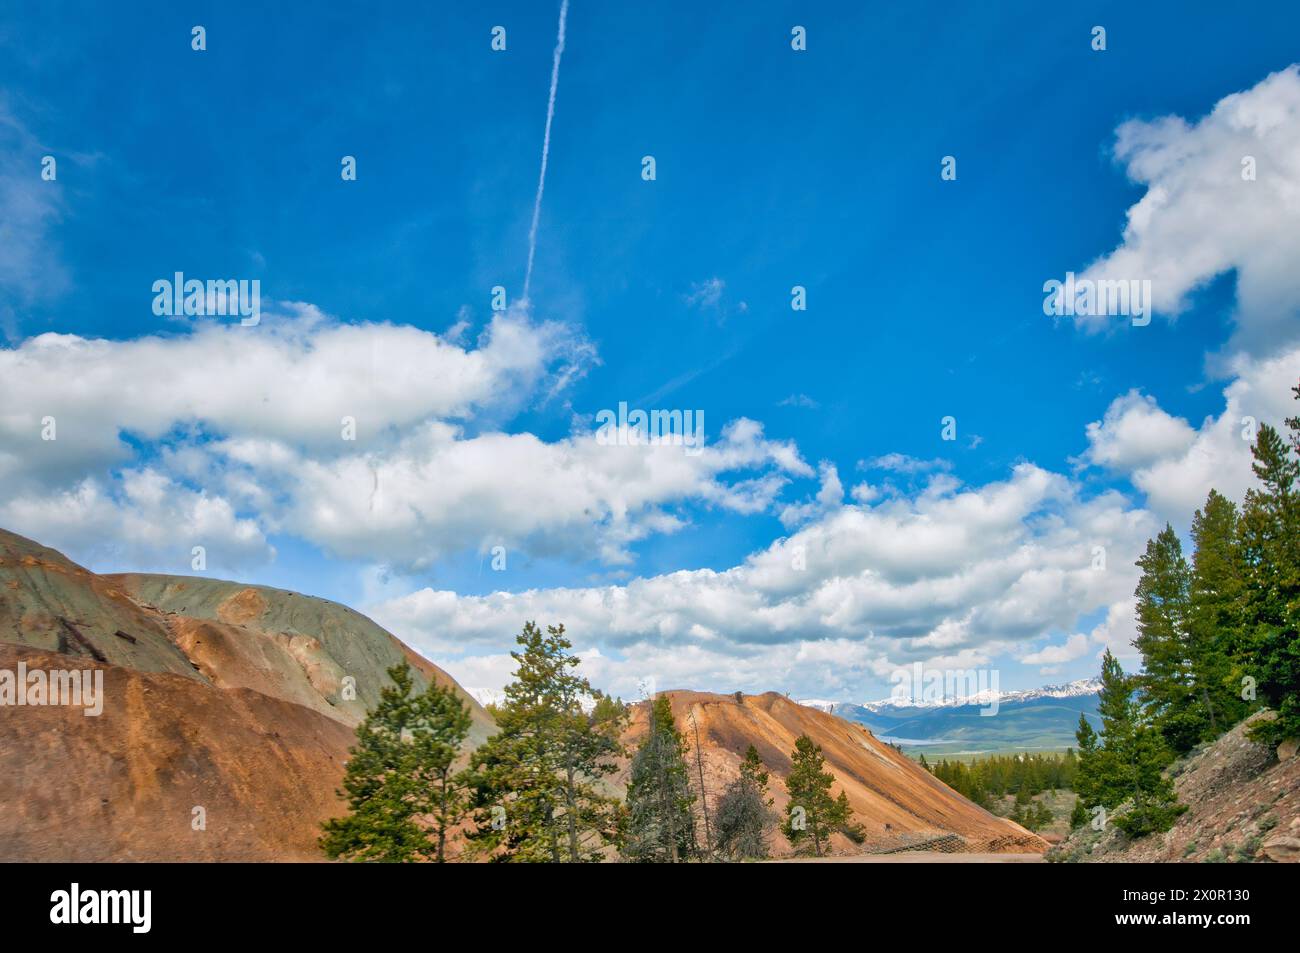 Dieses Bild zeichnet ein wunderschönes Bild von Colorados Herz mit einer naturreichen Bergkulisse unter einem Himmel voller Bewegung und Leben Stockfoto